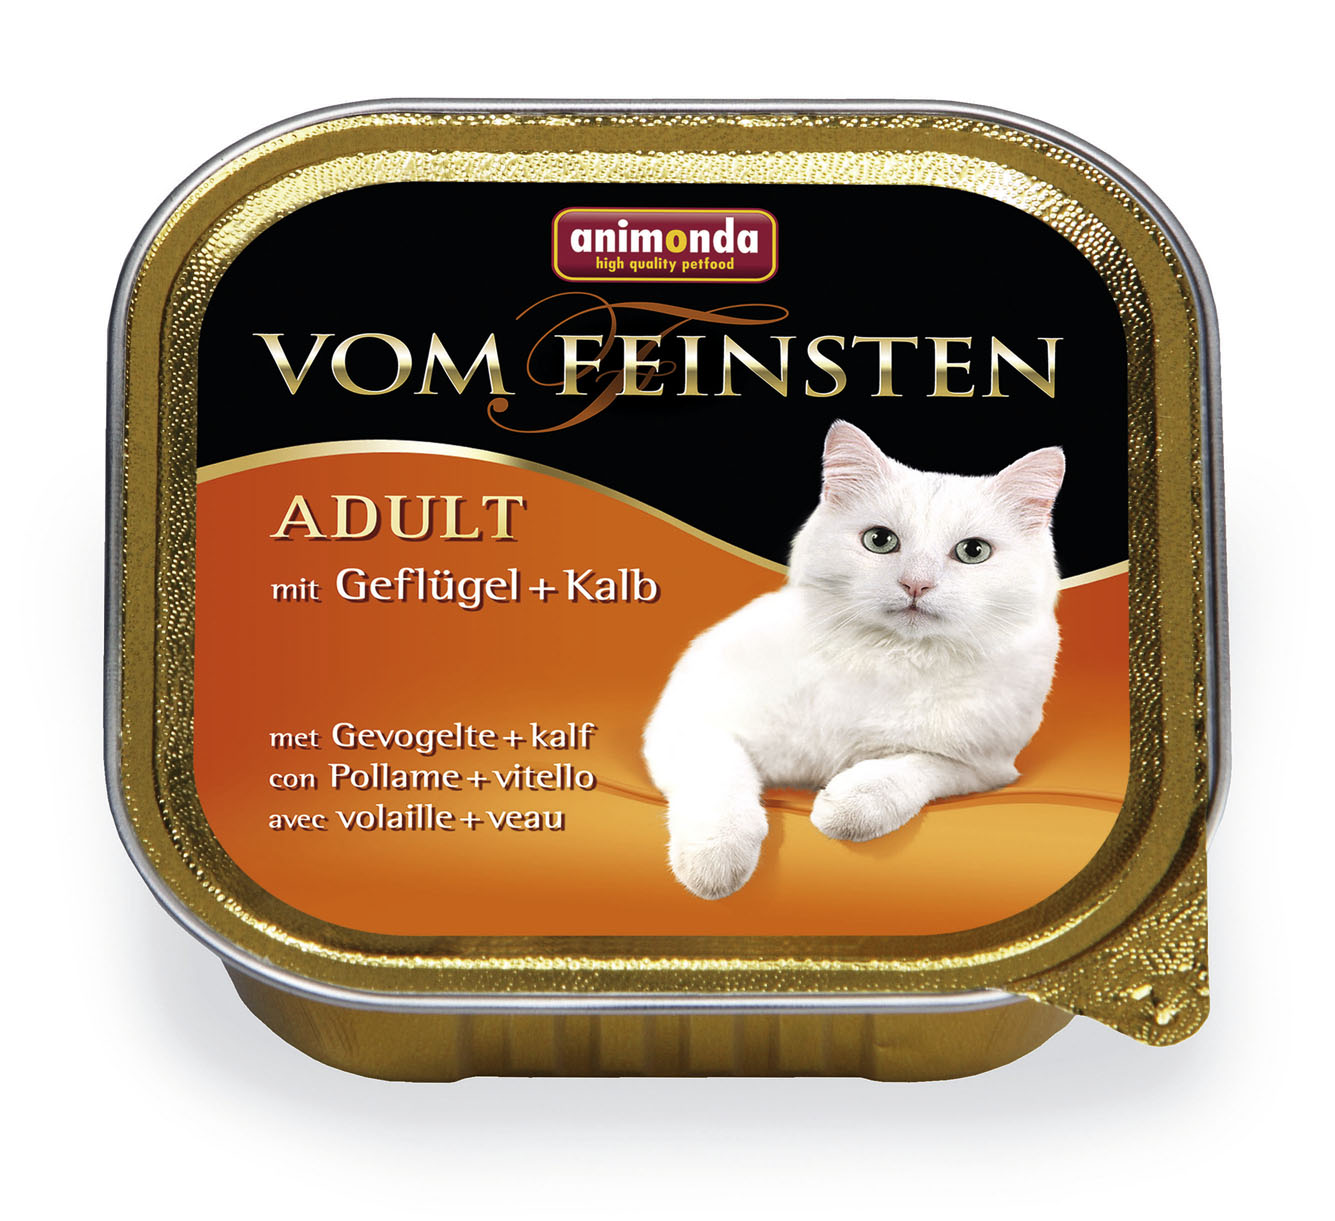 Пастет за израснали котки Vom Feinsten Adult Animonda, Германия, 100 гр